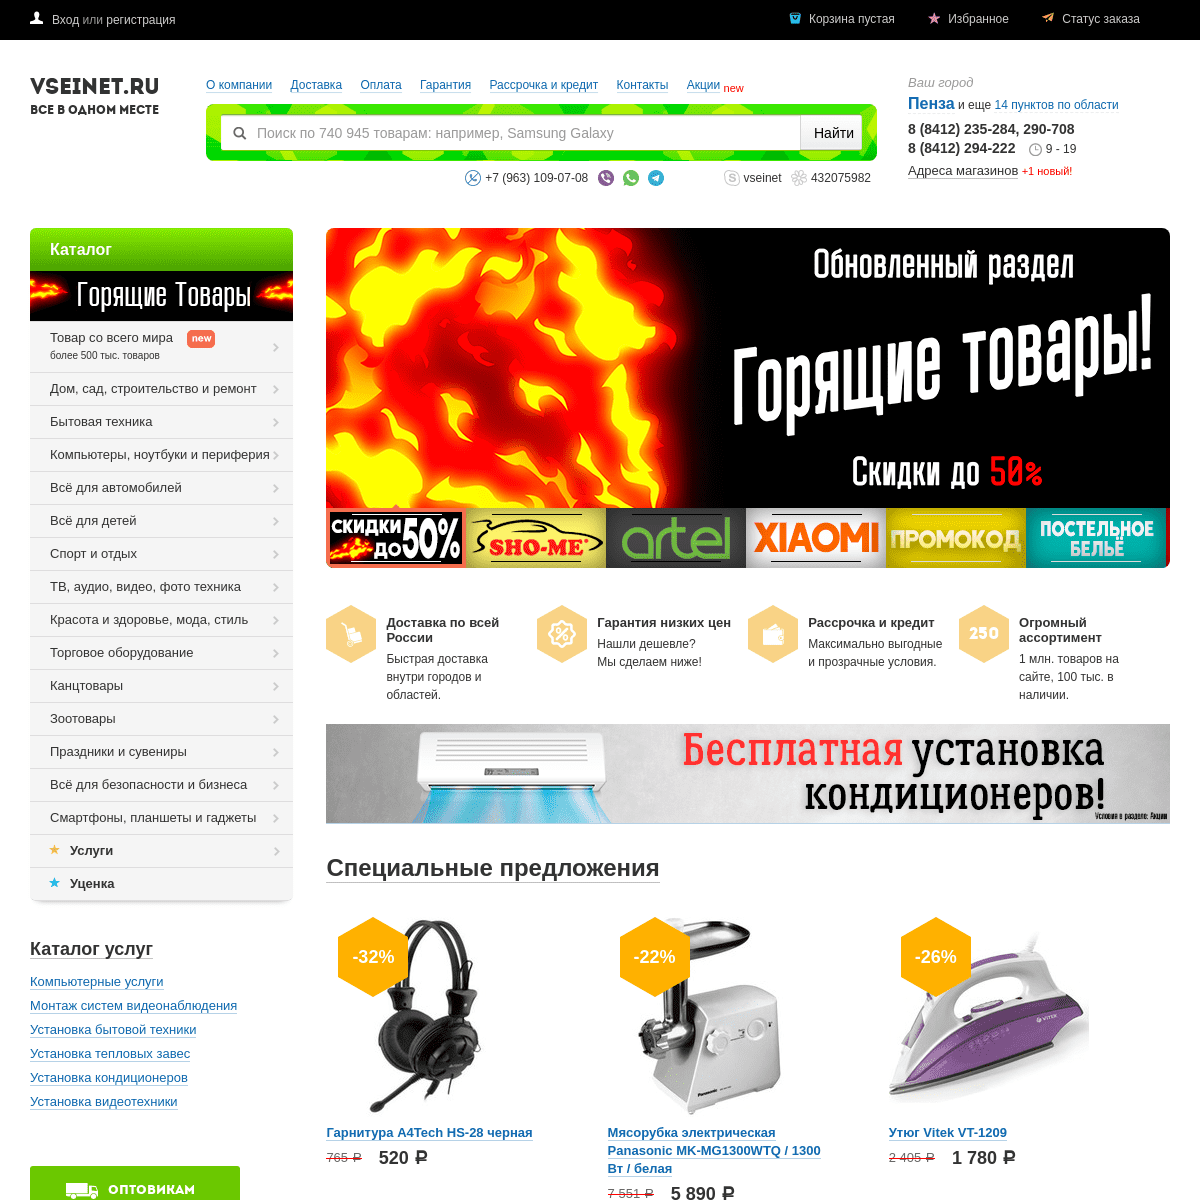 Интернет-магазин бытовой техники и товаров для дома в Пензе - VseInet.ru